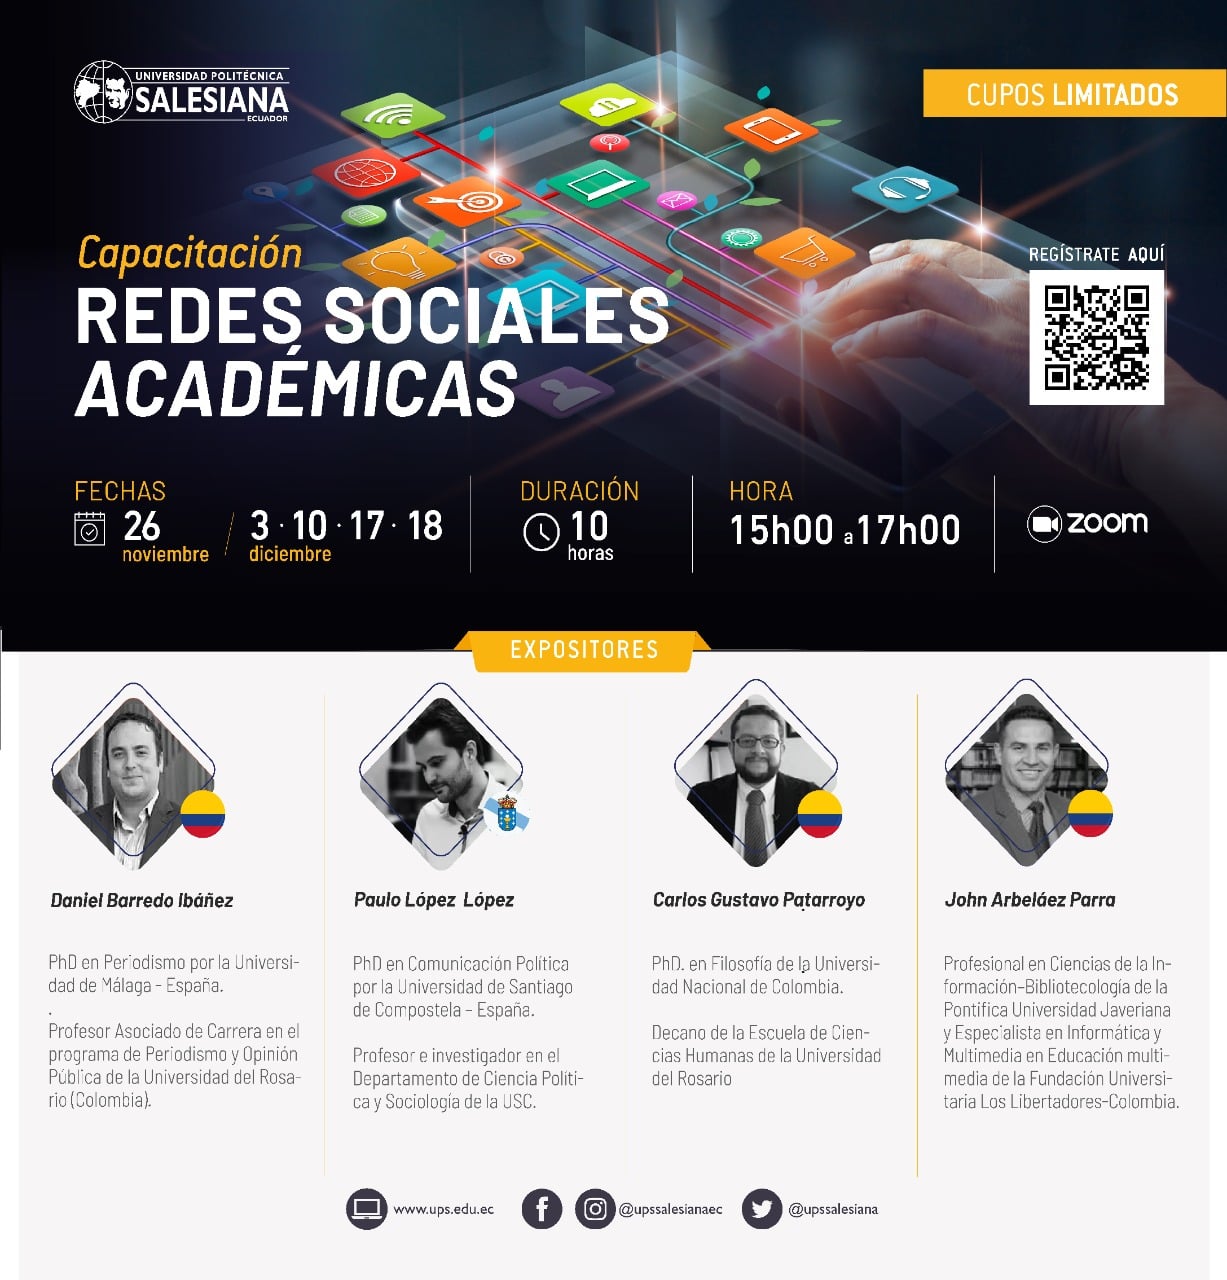 Capacitación de Redes Sociales Académicas.